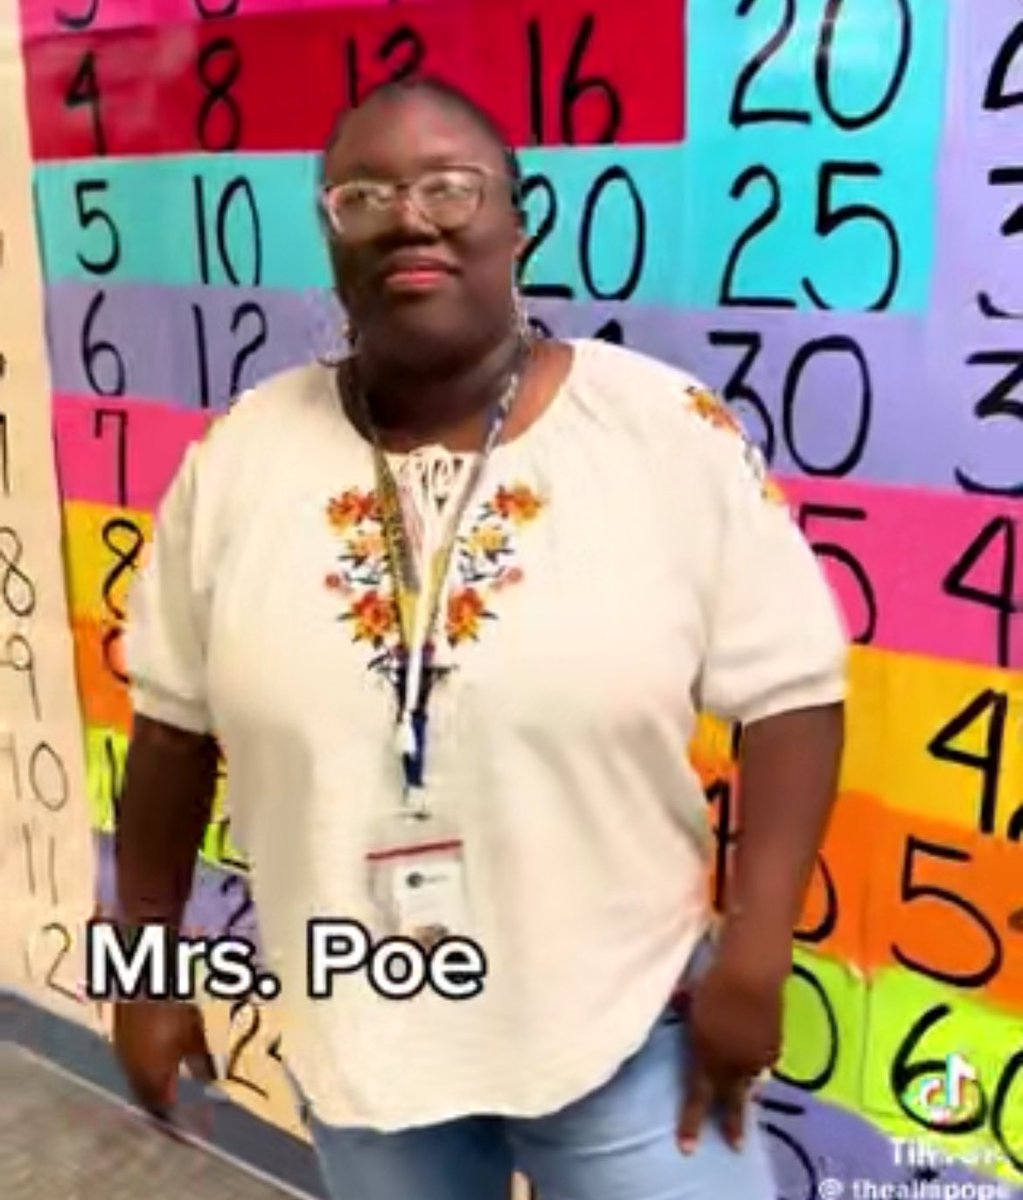 mrs. poe hit it tho!